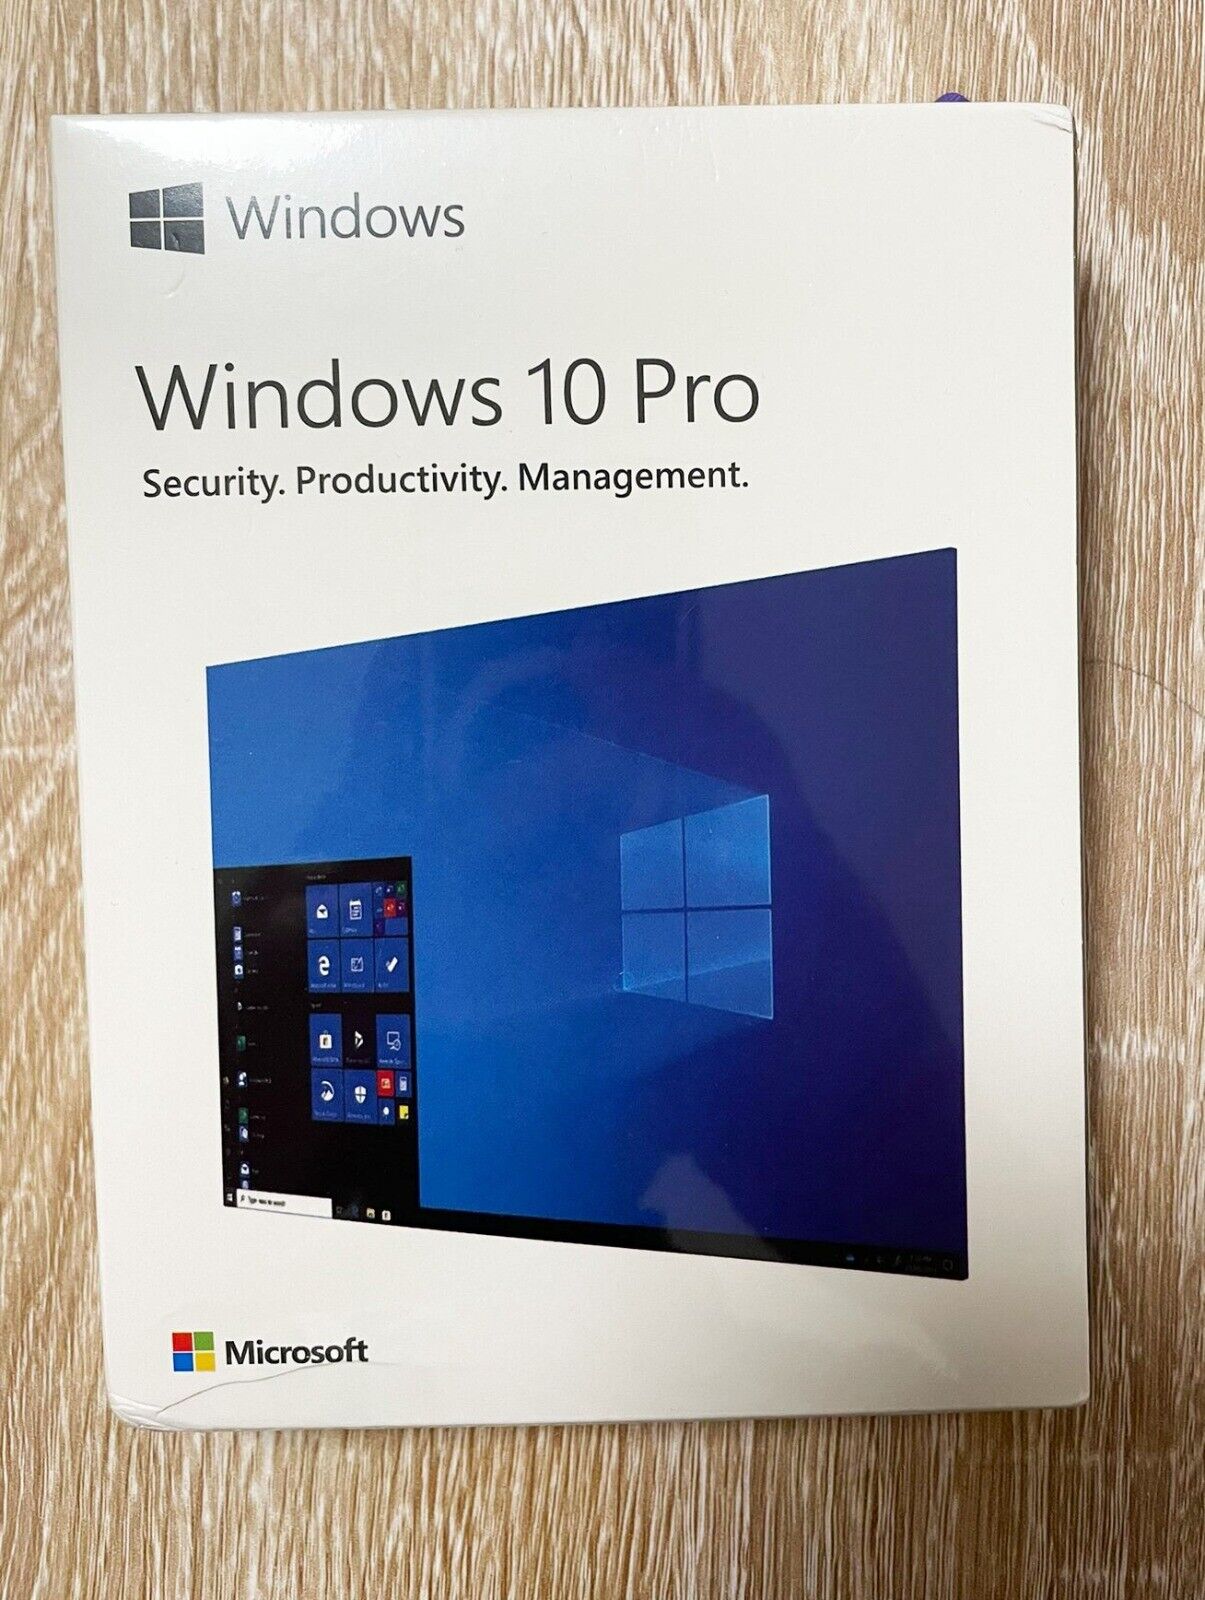 Microsoft Windows 10 Pro 32 + 64 Bit USB Stick Flash Drive Key Retail Box New